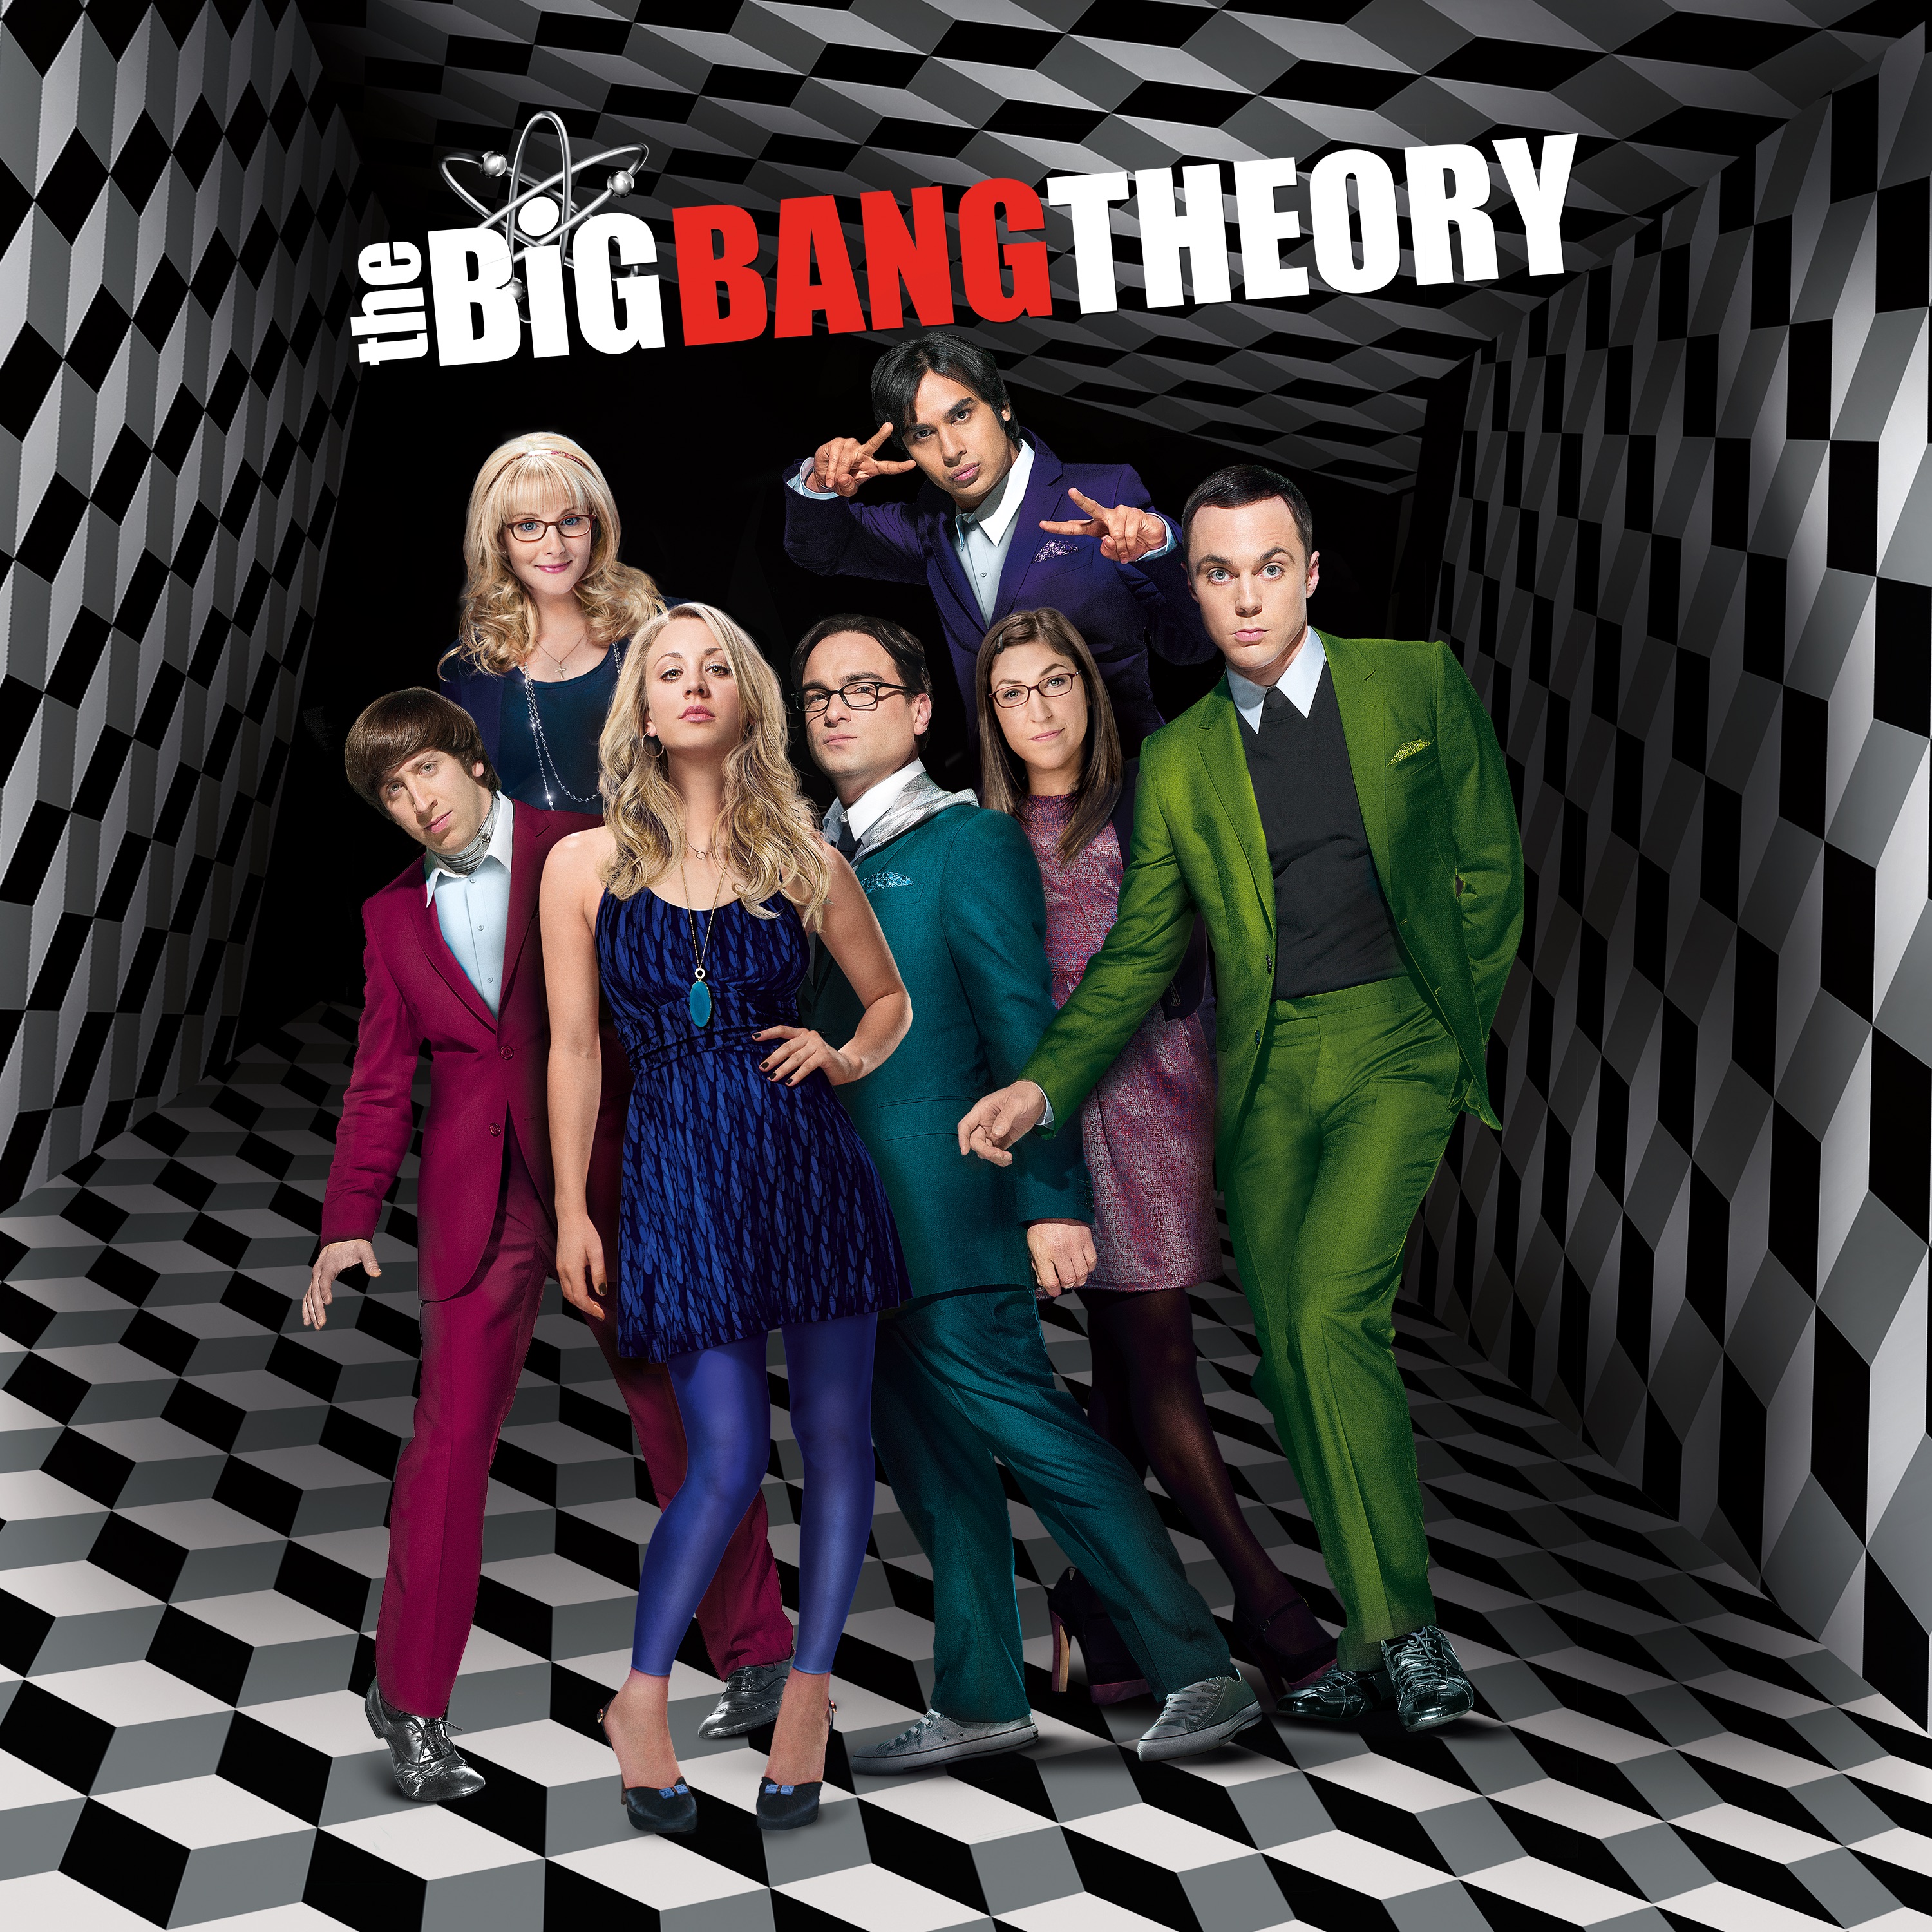 The big bang theory season 6 full episodes